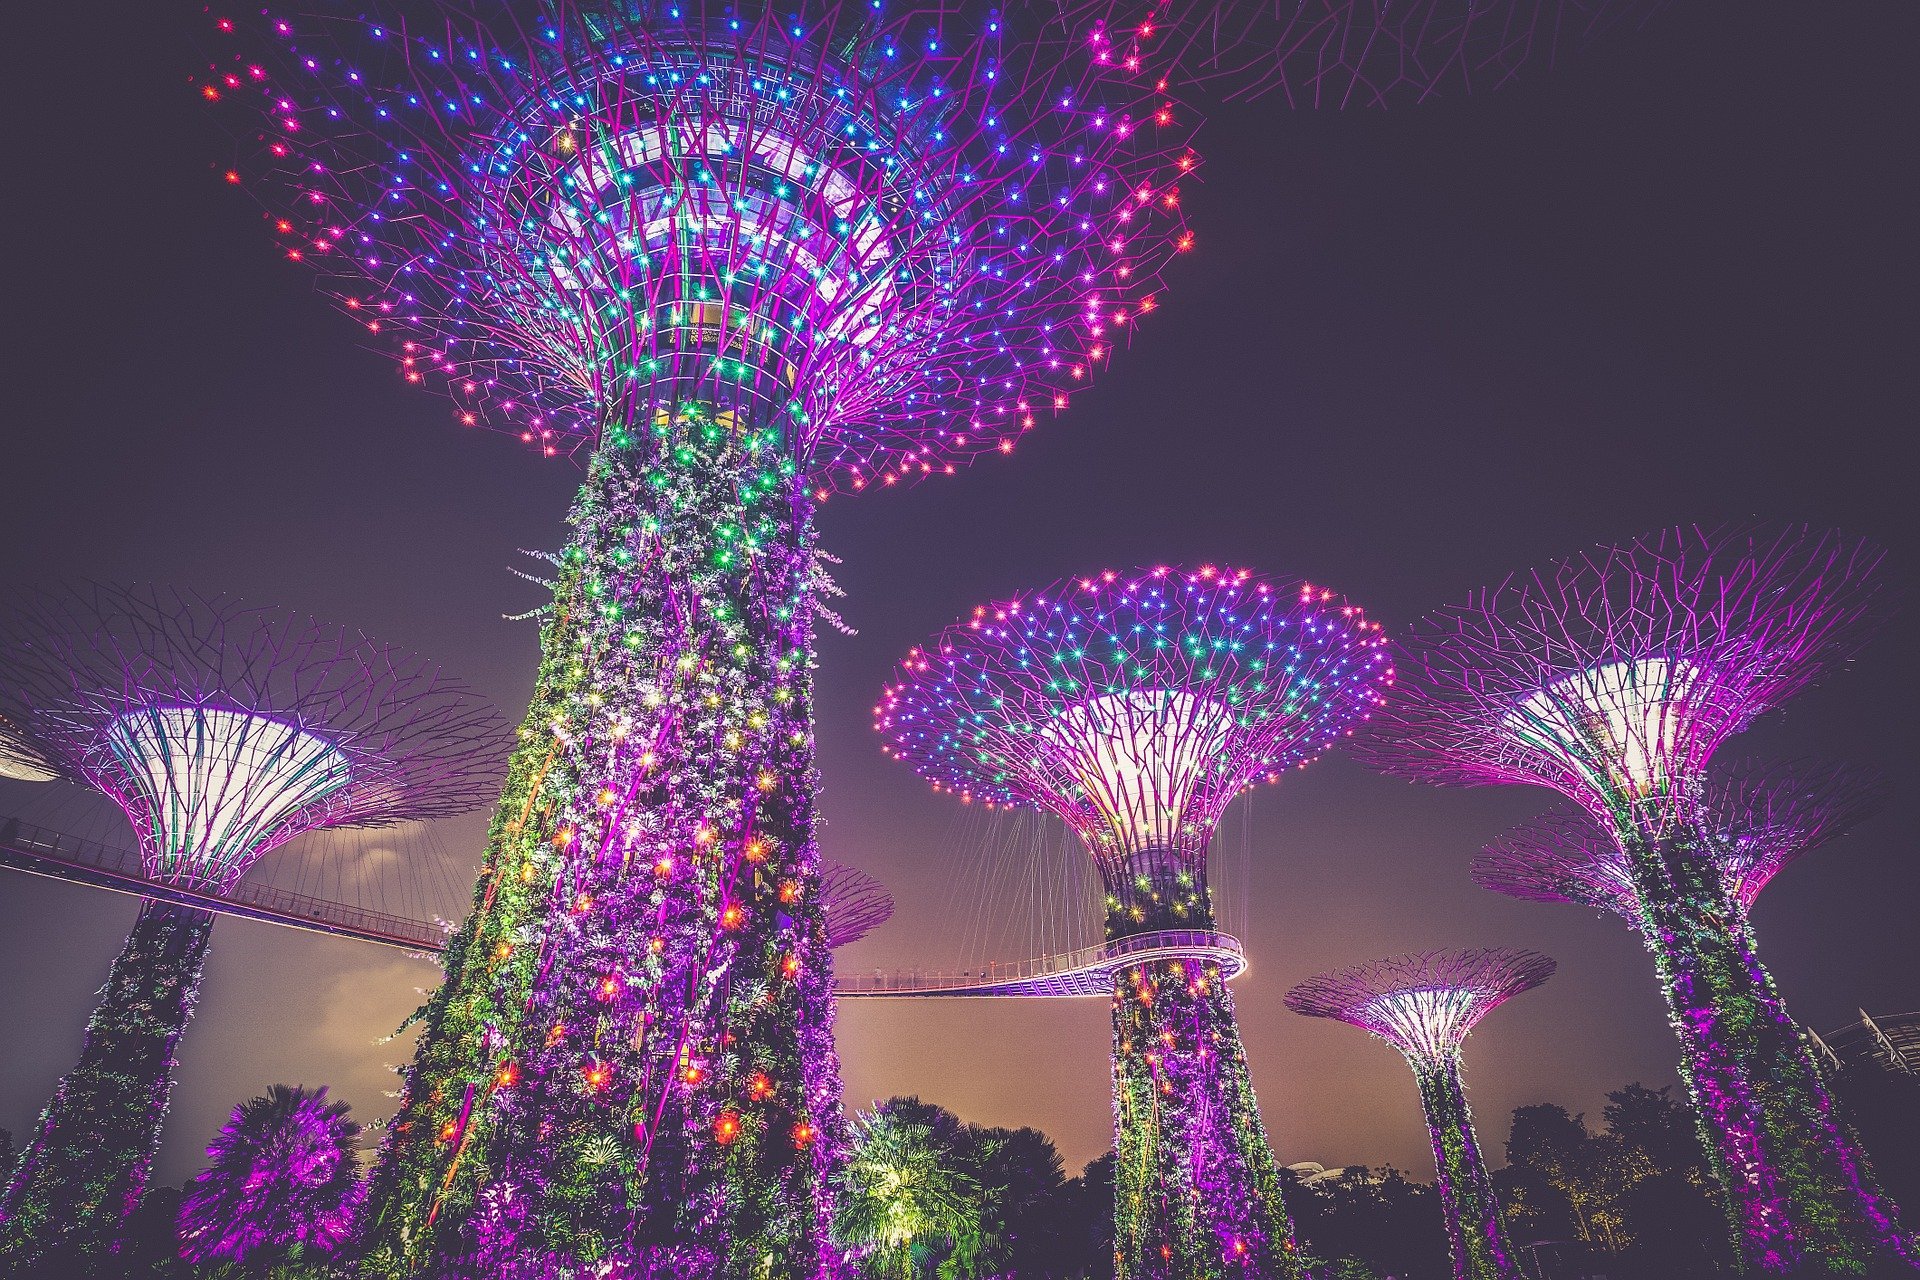 دليلك الشامل حول أفضل الأماكن السياحية في سنغافورة